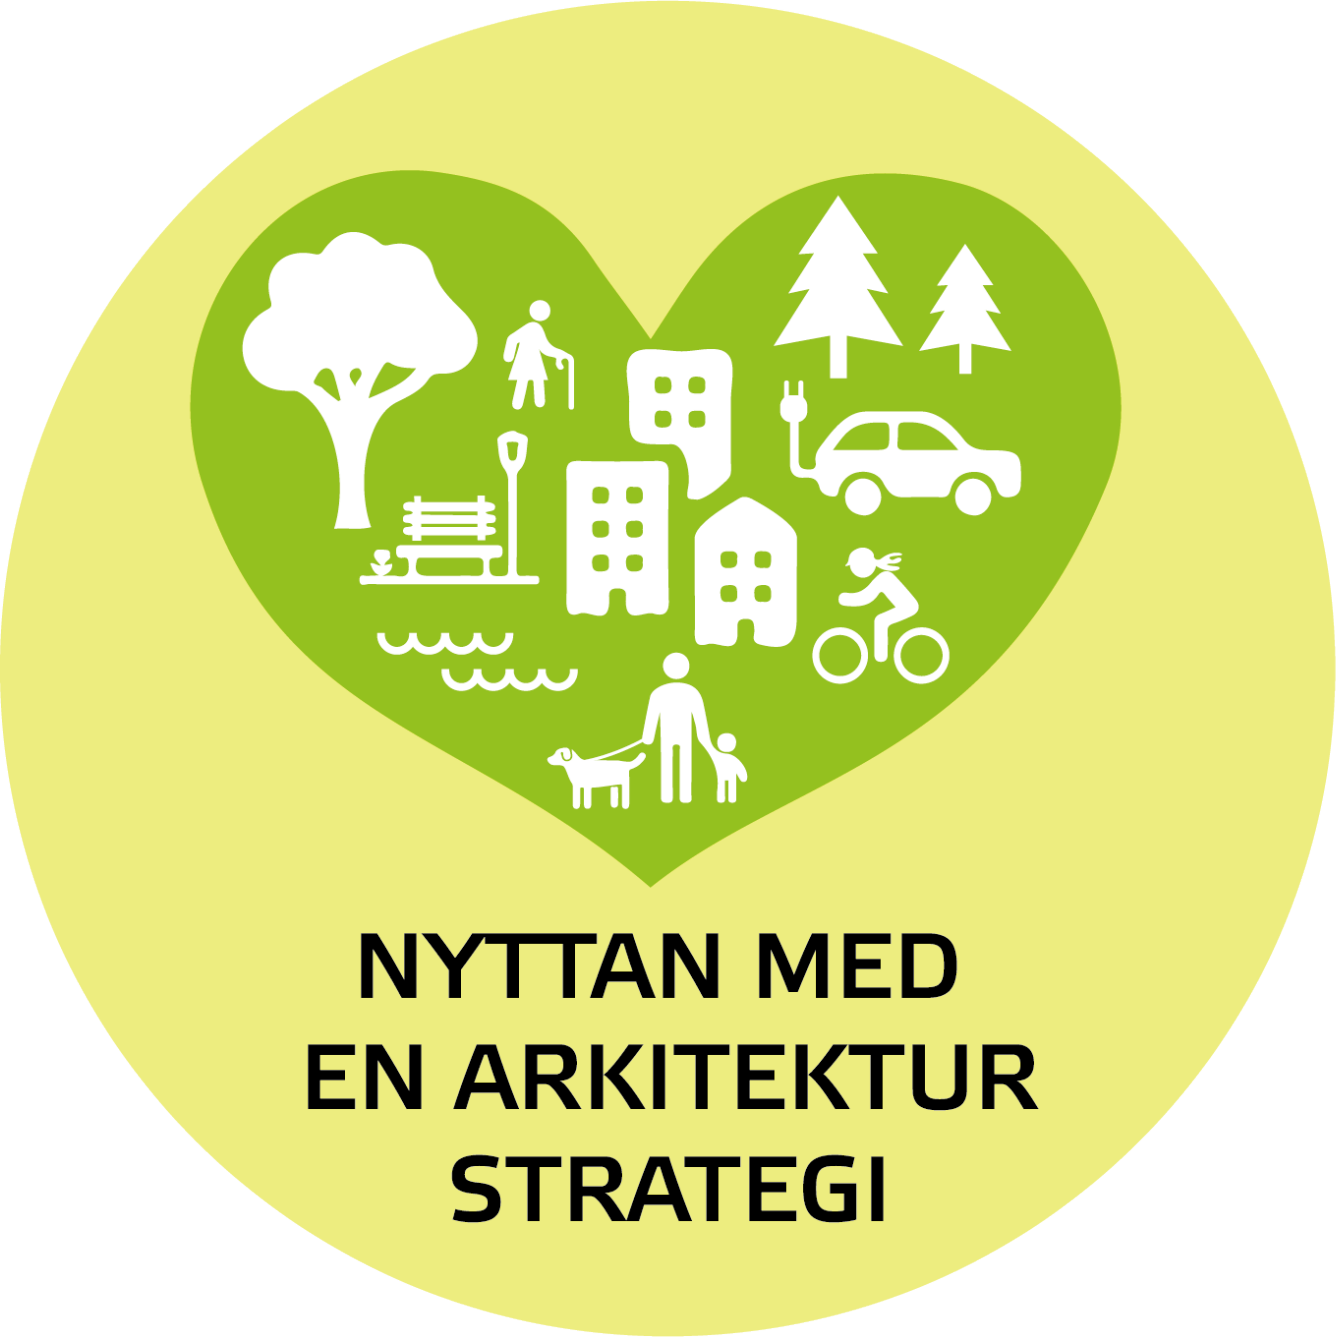 Människor, träd, hus, bil, cykel och miljö, illustration.